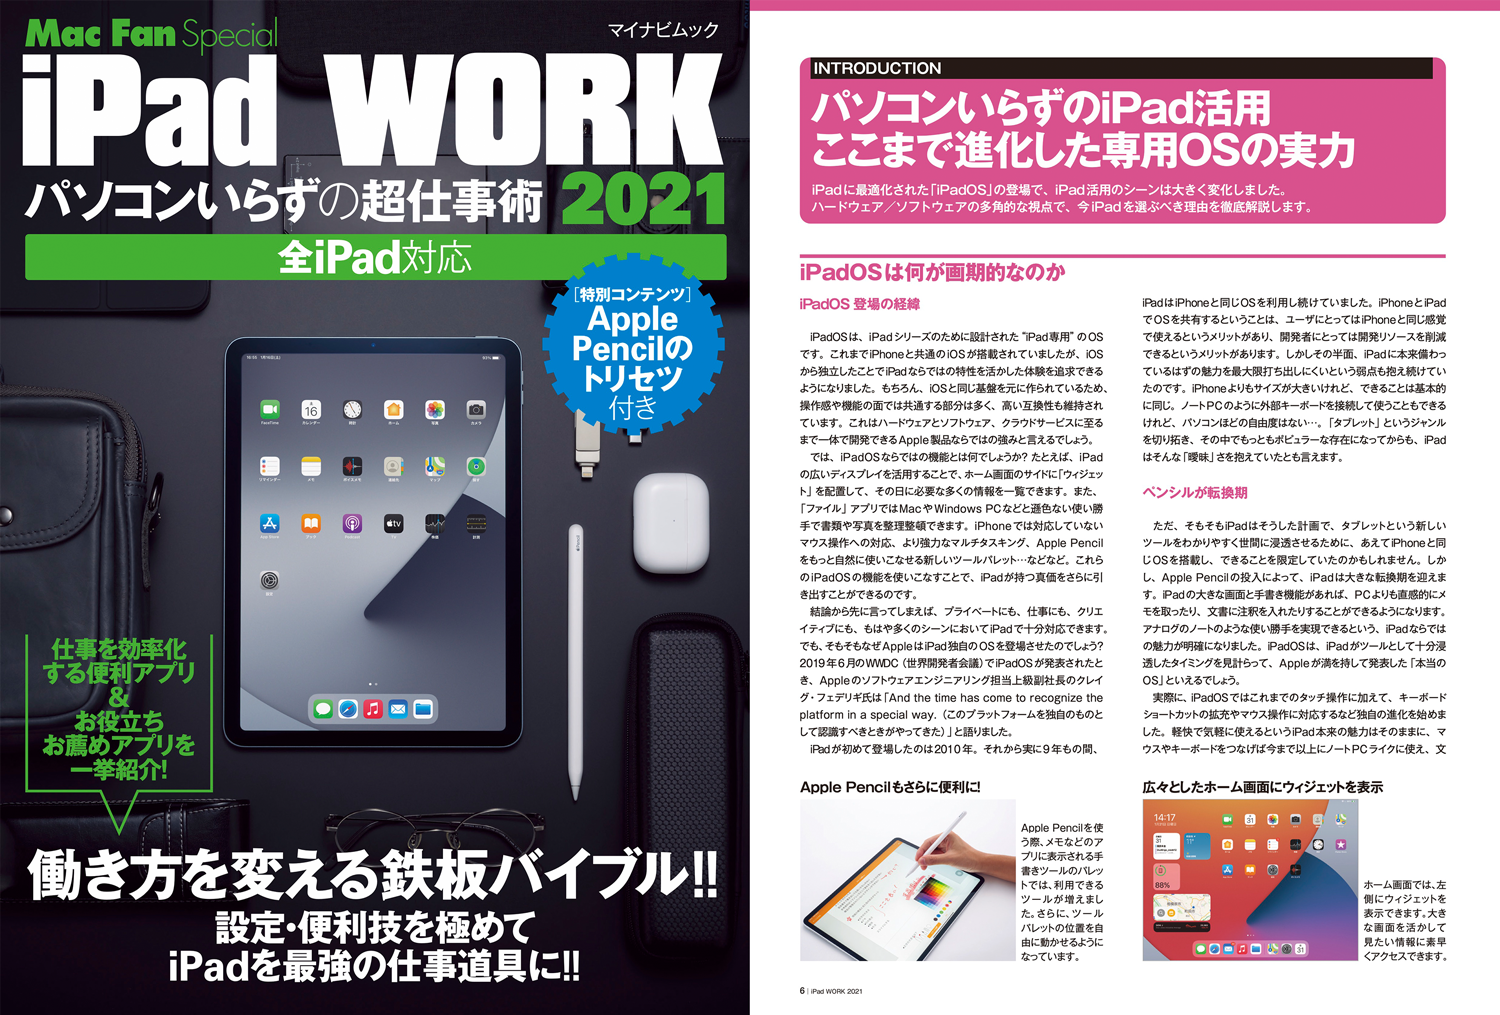 Mac Fan Special iPad WORK 2021